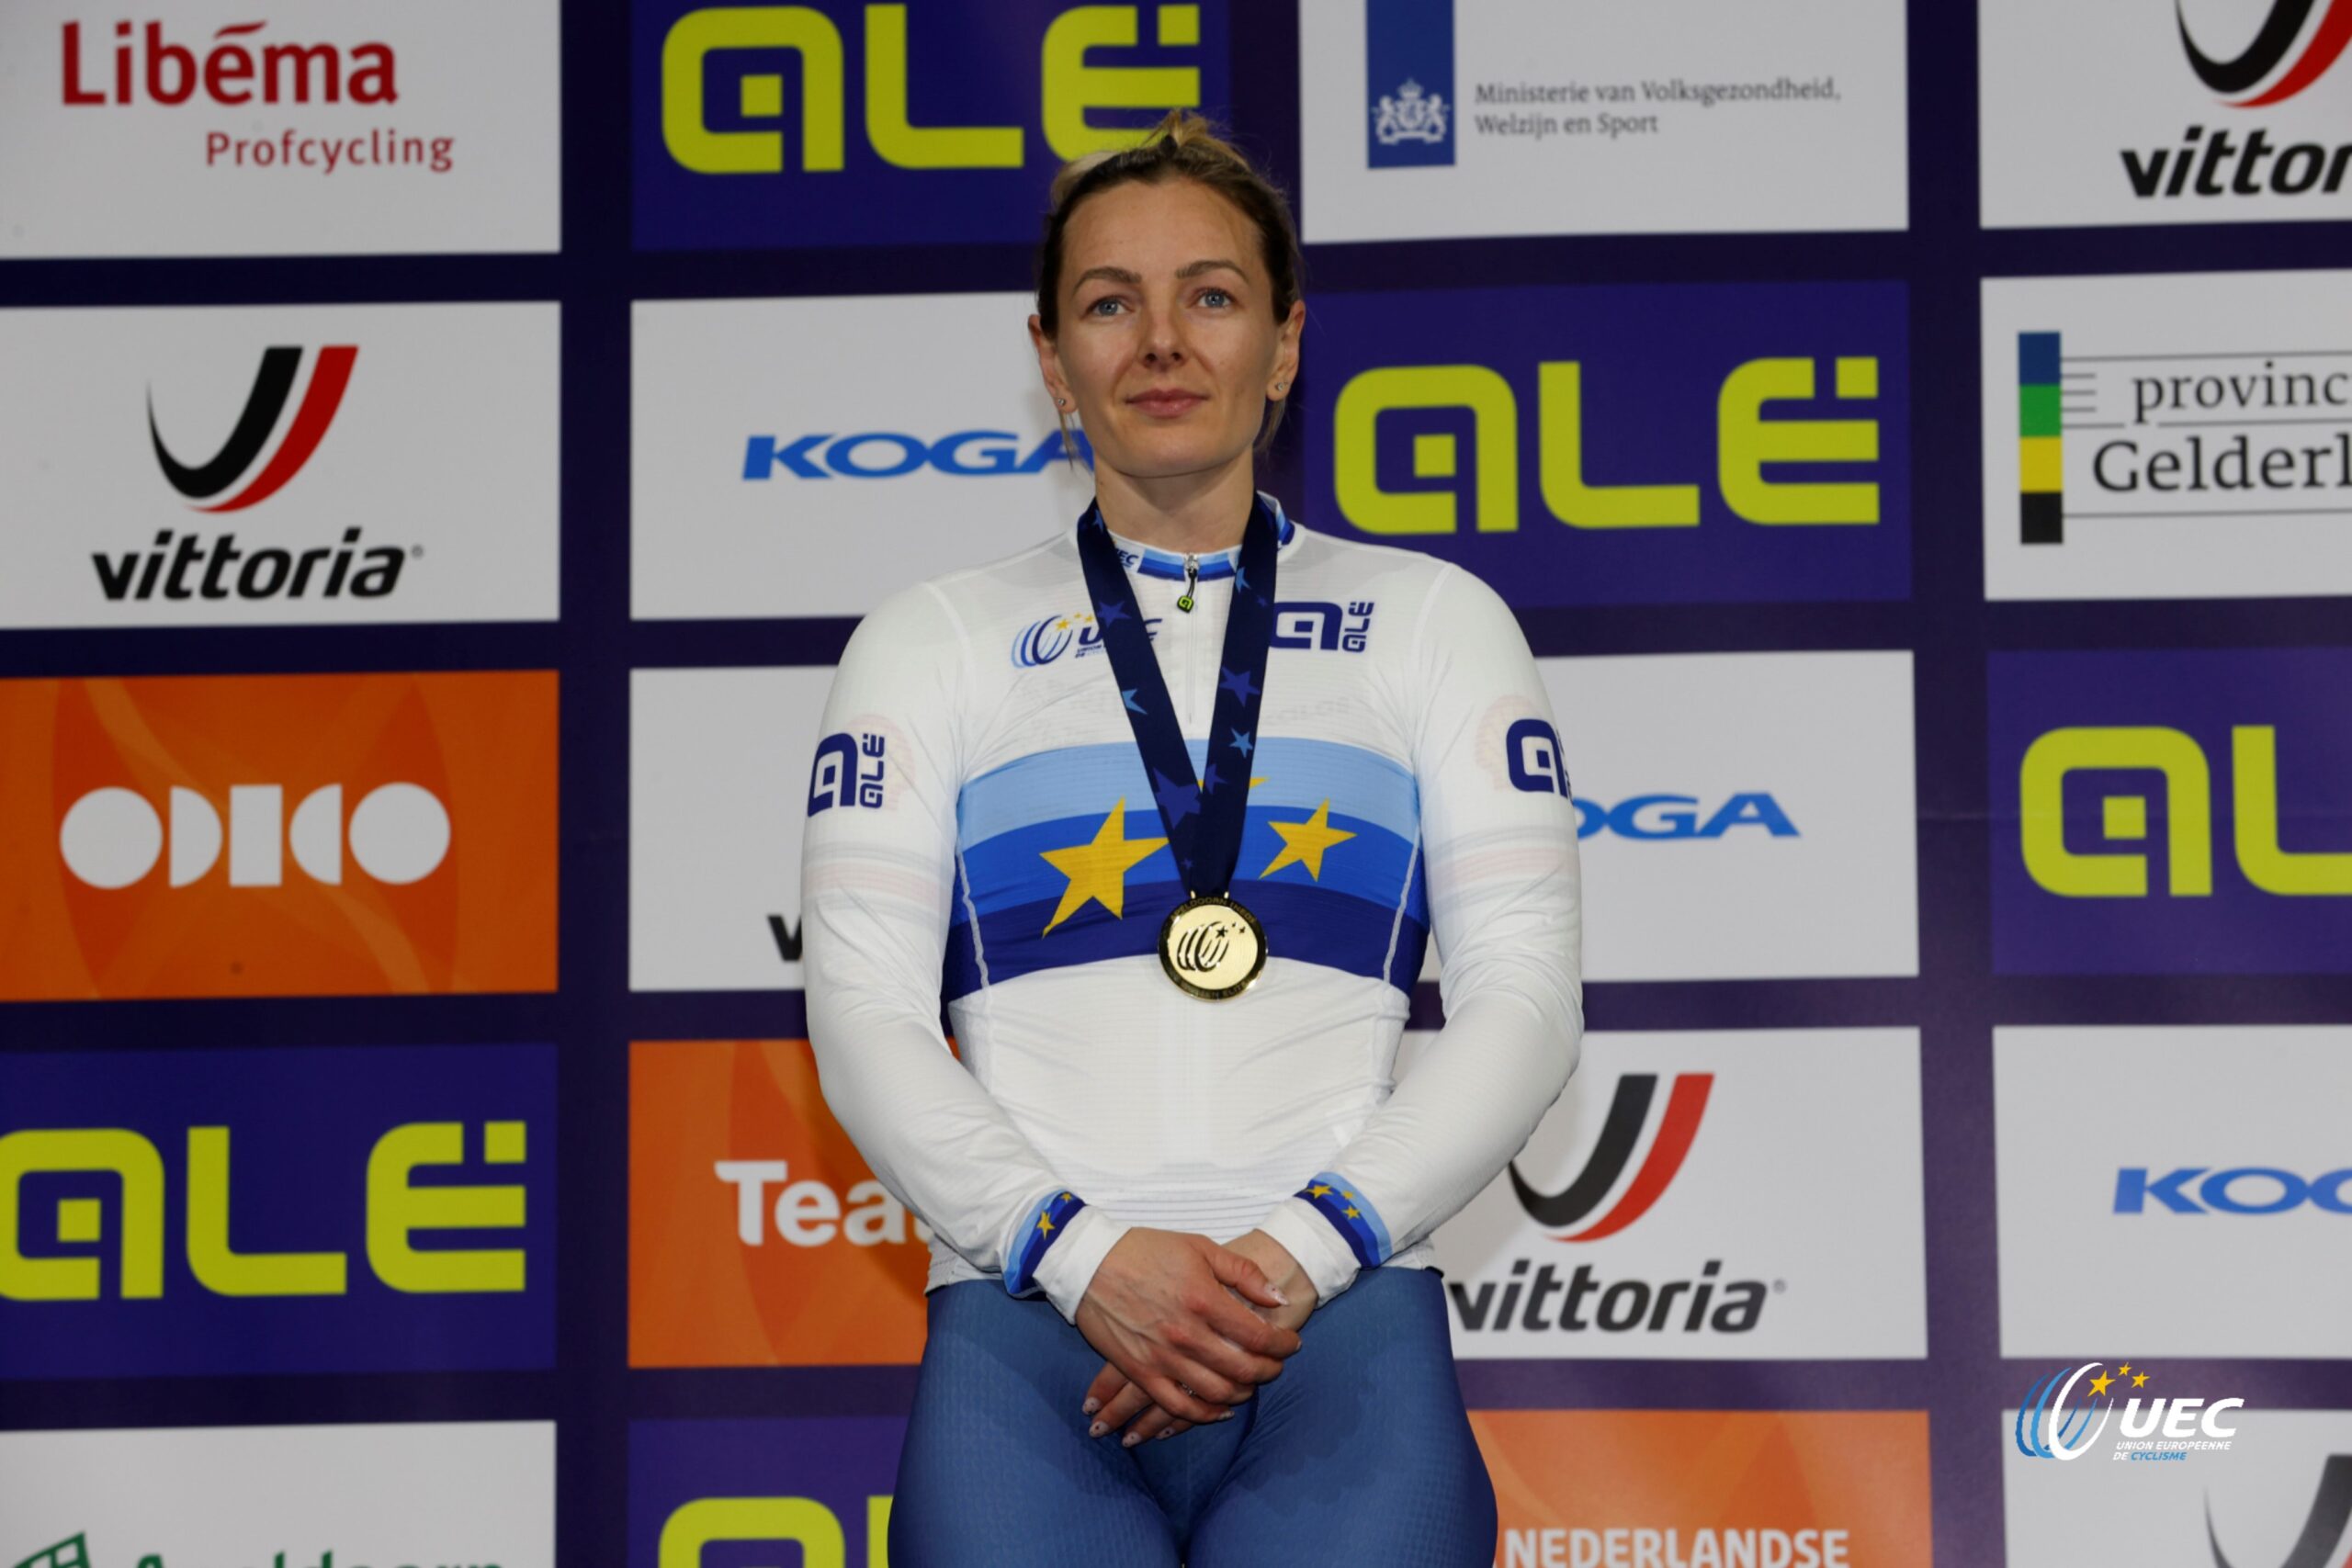 Кэти Марчант стала чемпионкой Европы в гите на 500 метров